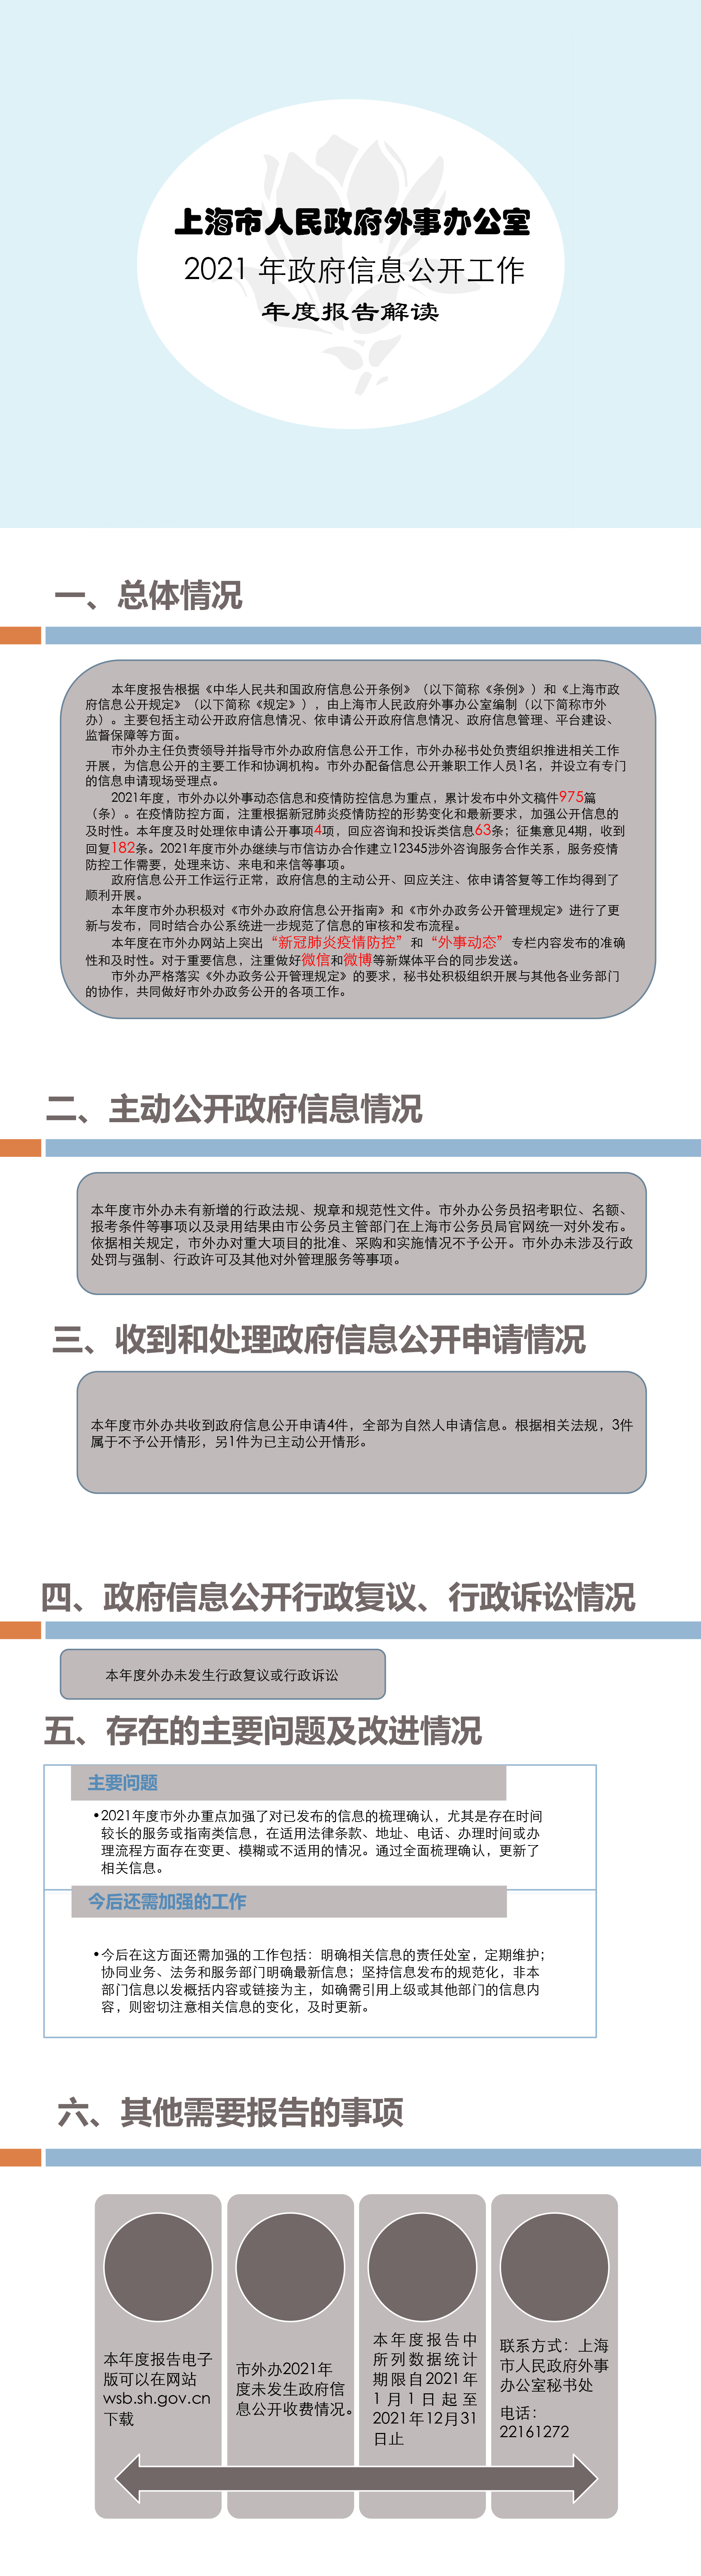 2021年度上海市人民政府外事办公室政府信息公开工作年度报告解读.jpg